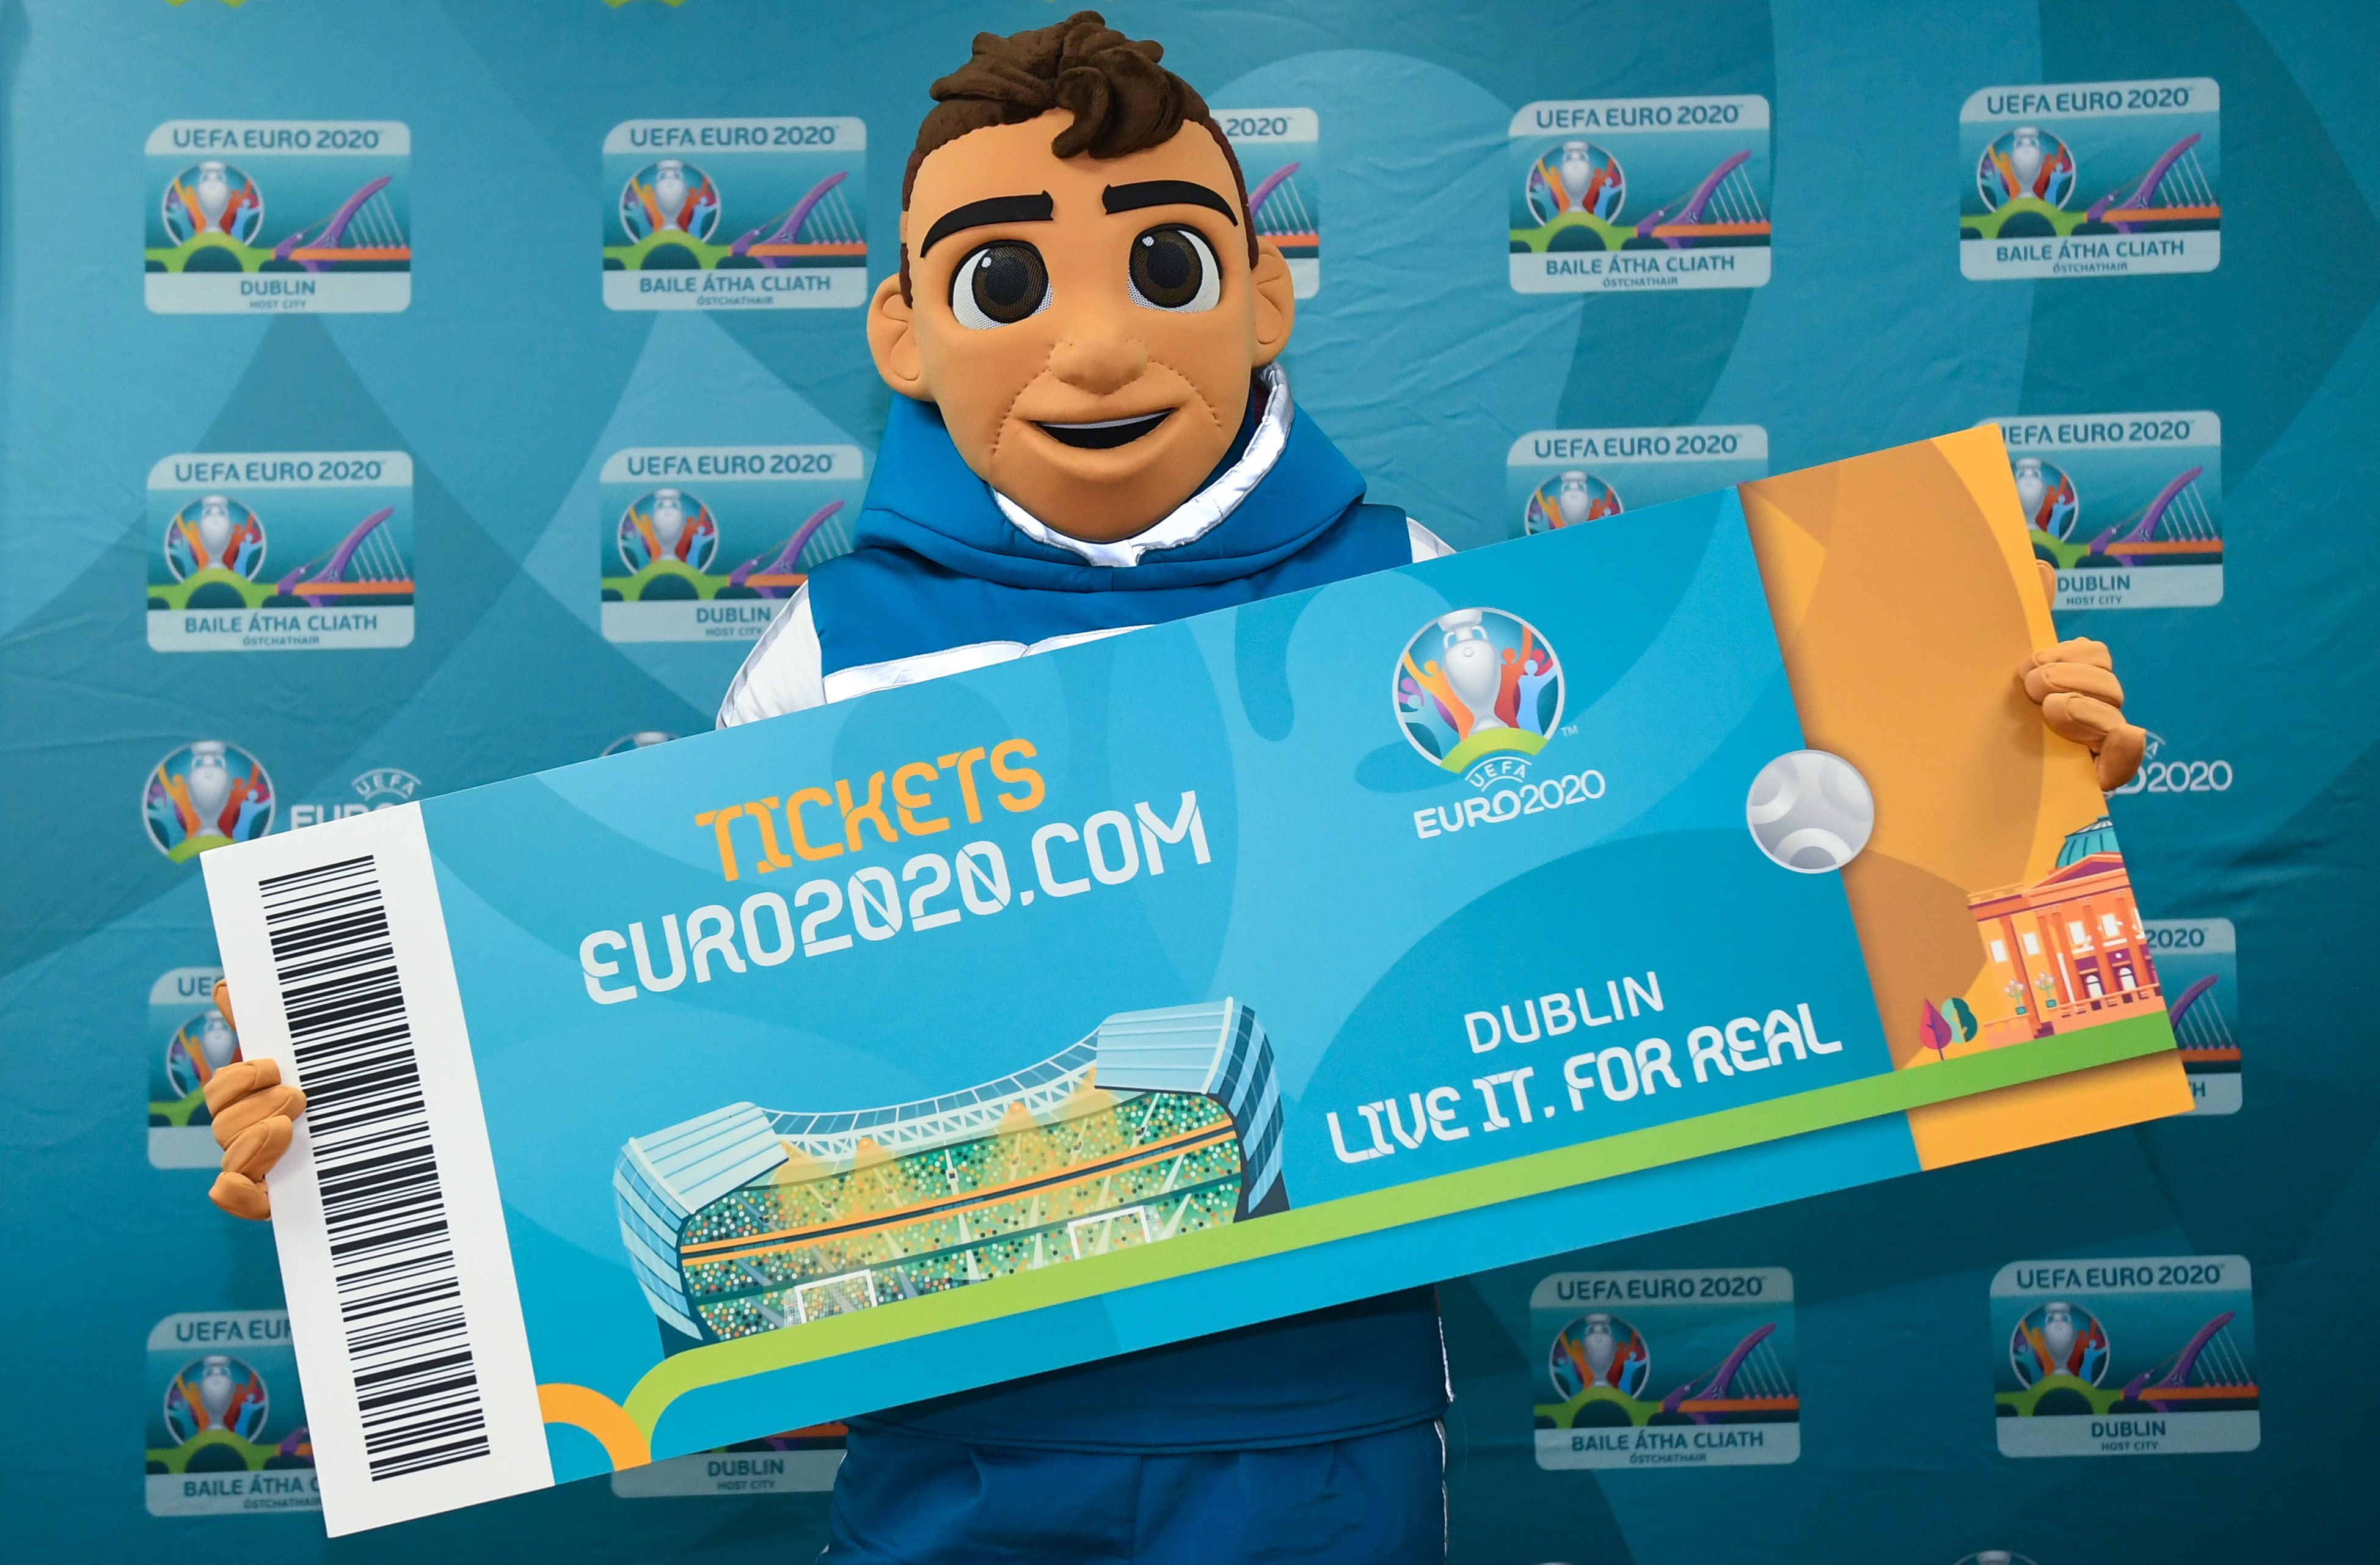 Tickets voor EURO 2020 Games in Baku Go in de uitverkoop